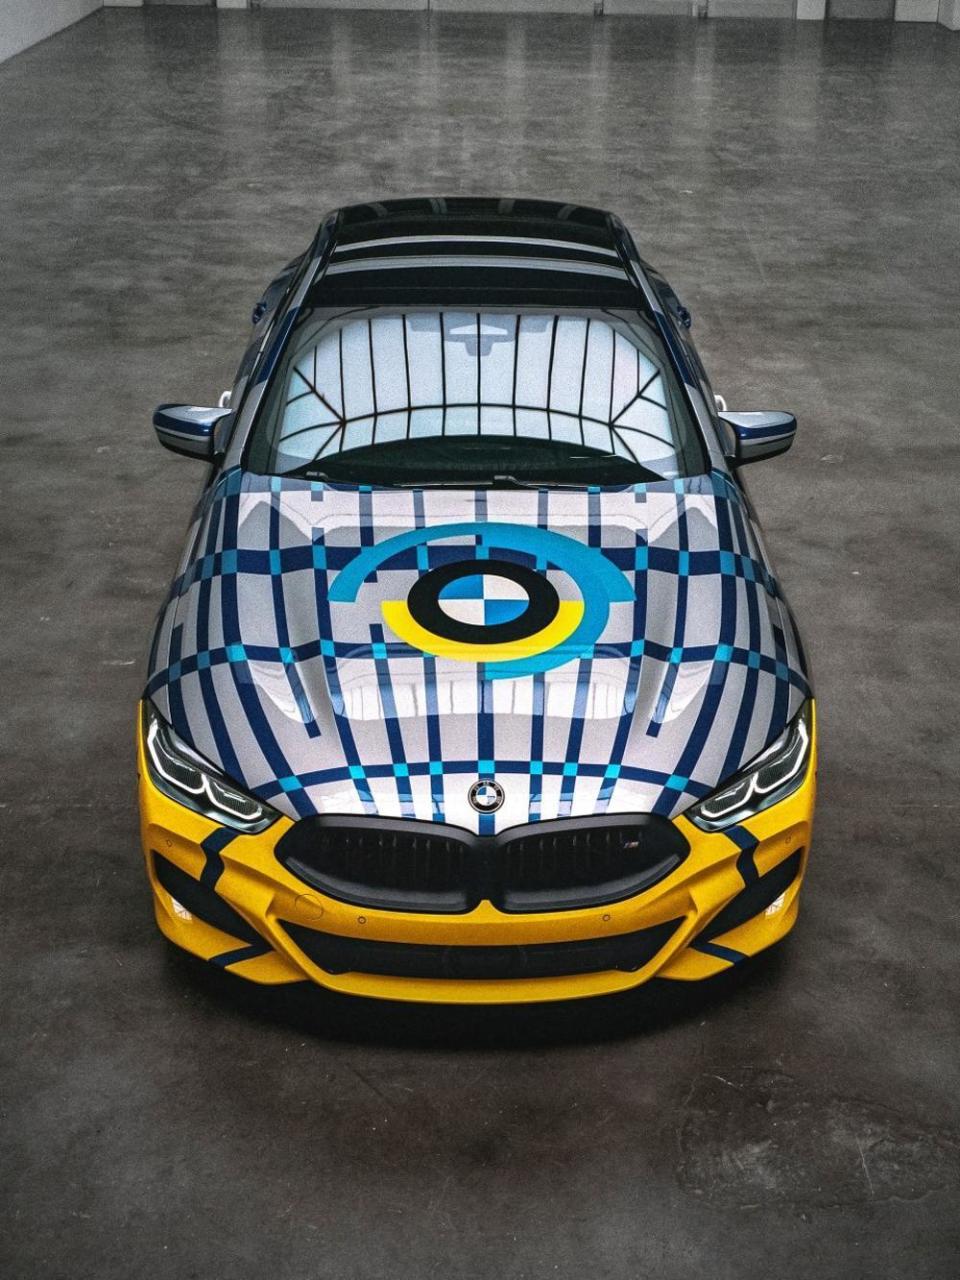 THE 8 Gran Coupé四門旗艦跑車優美的流線車身線條以及極致工藝美學，經Jeff Koons之手加入了大膽前衛的普普藝術風格，鮮明跳動的色彩與狂放複雜的幾何圖型，顛覆眾人的想像。